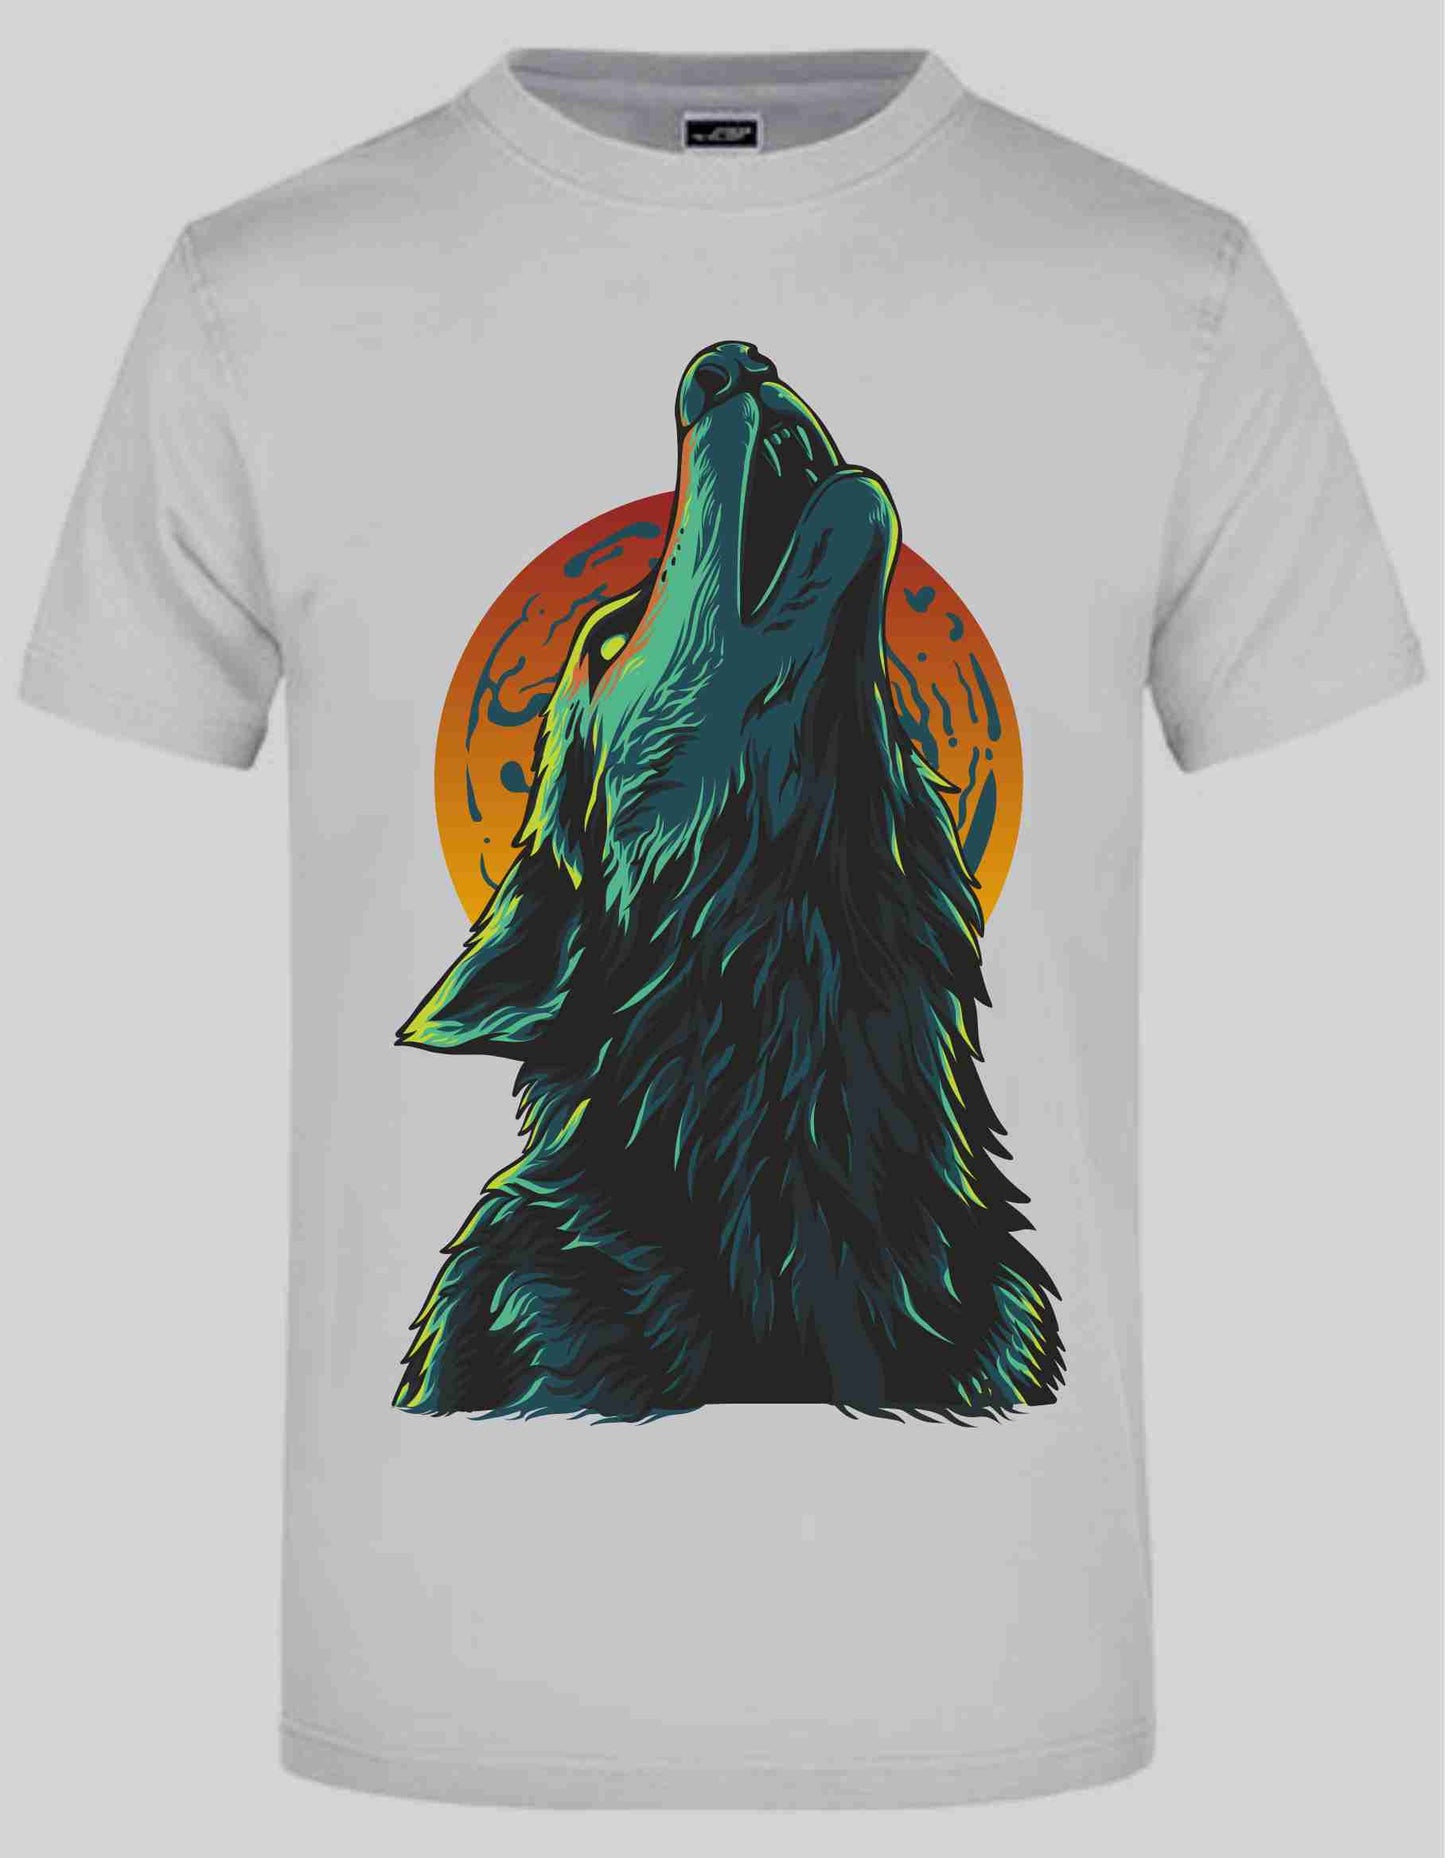 Wolf T-Shirt auch zum selbst gestalten bei tex-druck.de